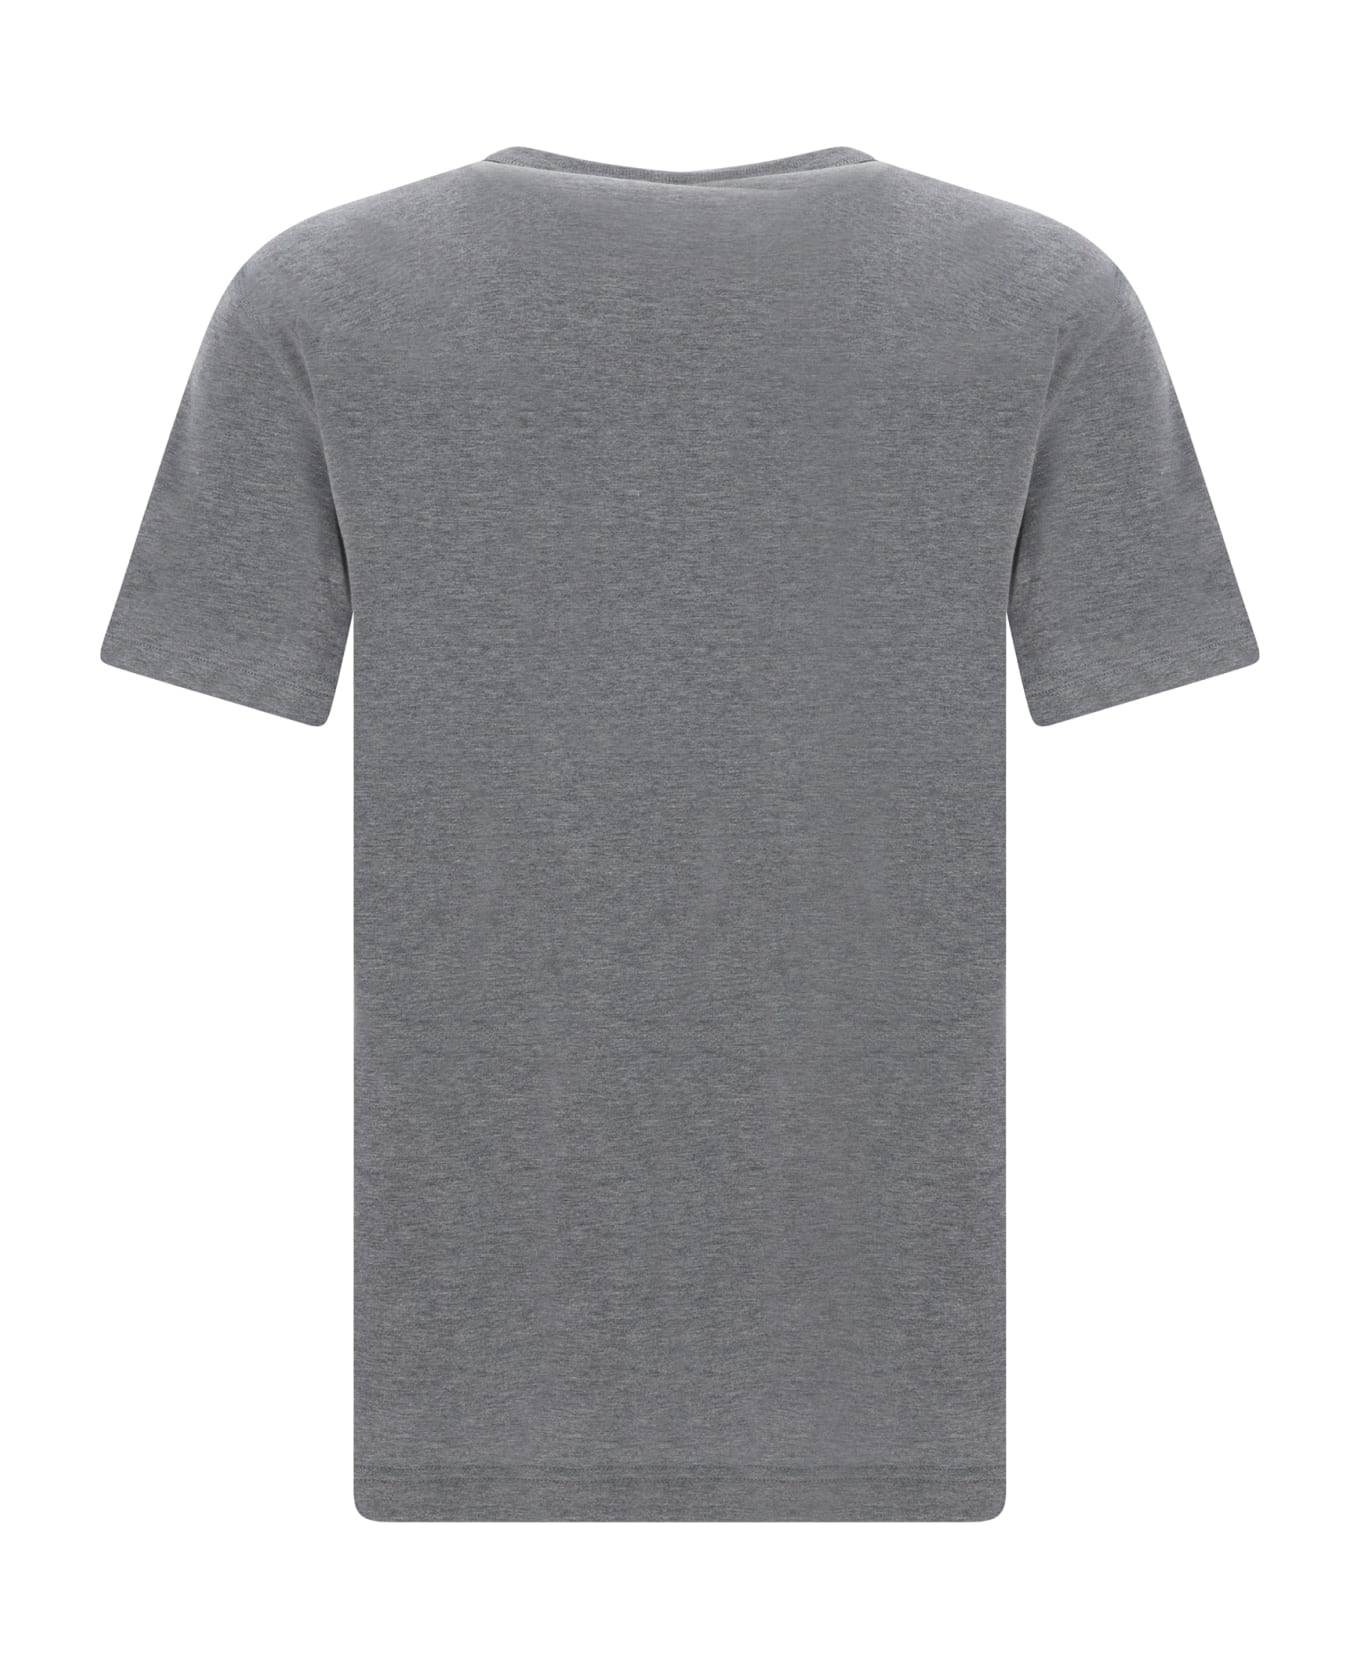 Dolce & Gabbana Cotton T-shirt - Melange Grigio シャツ